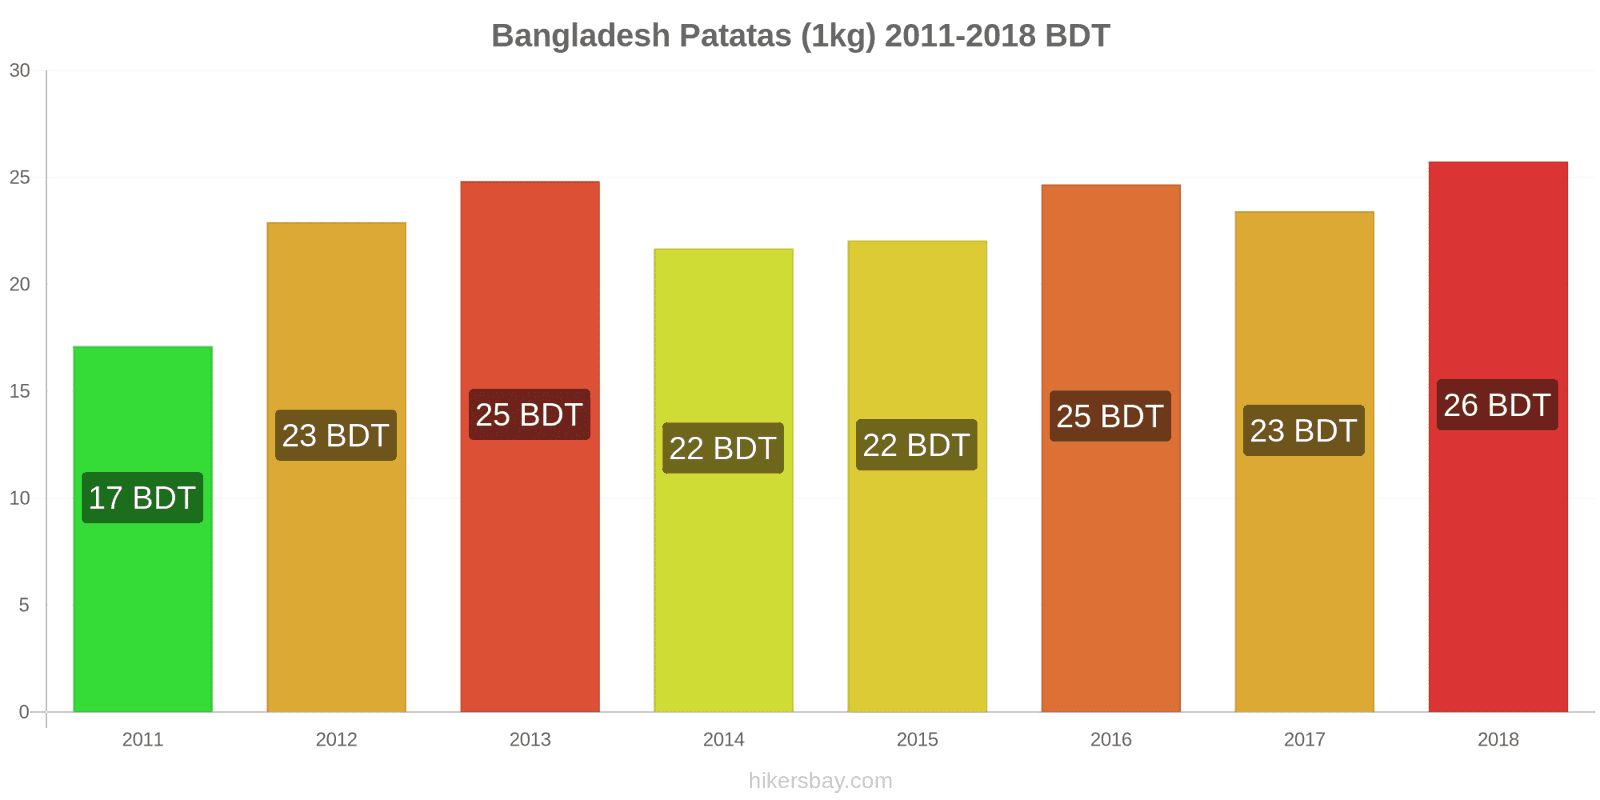 Bangladesh cambios de precios Patatas (1kg) hikersbay.com